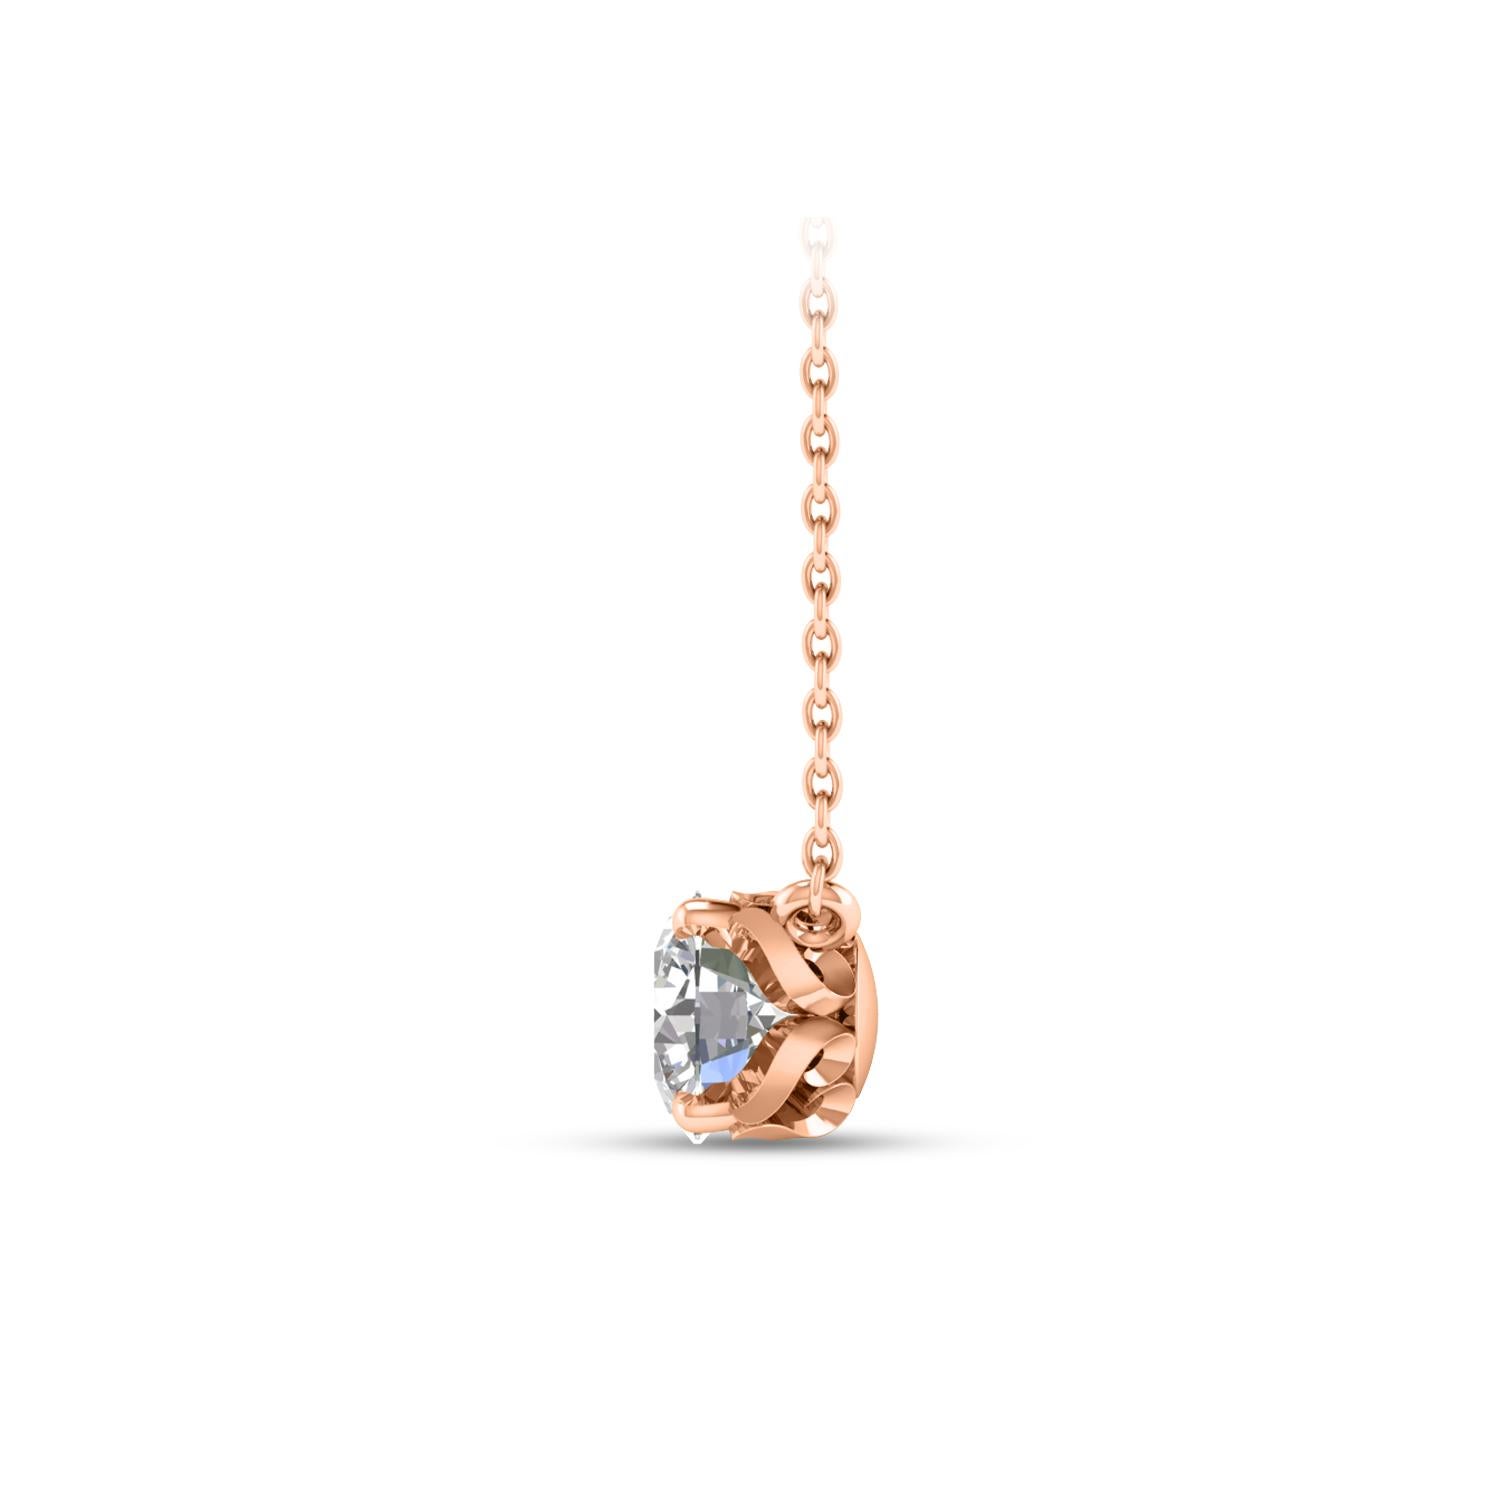  Dieses Solitär-Diamantencollier besteht aus einem einzelnen Diamanten im Brillantschliff von 0,34 Karat in einer Zackenfassung aus 18 KT Roségold. Diese elegante Halskette besteht aus einer 20-Zoll-Kabelkette mit einer 18-Zoll-Verlängerung.

(Die